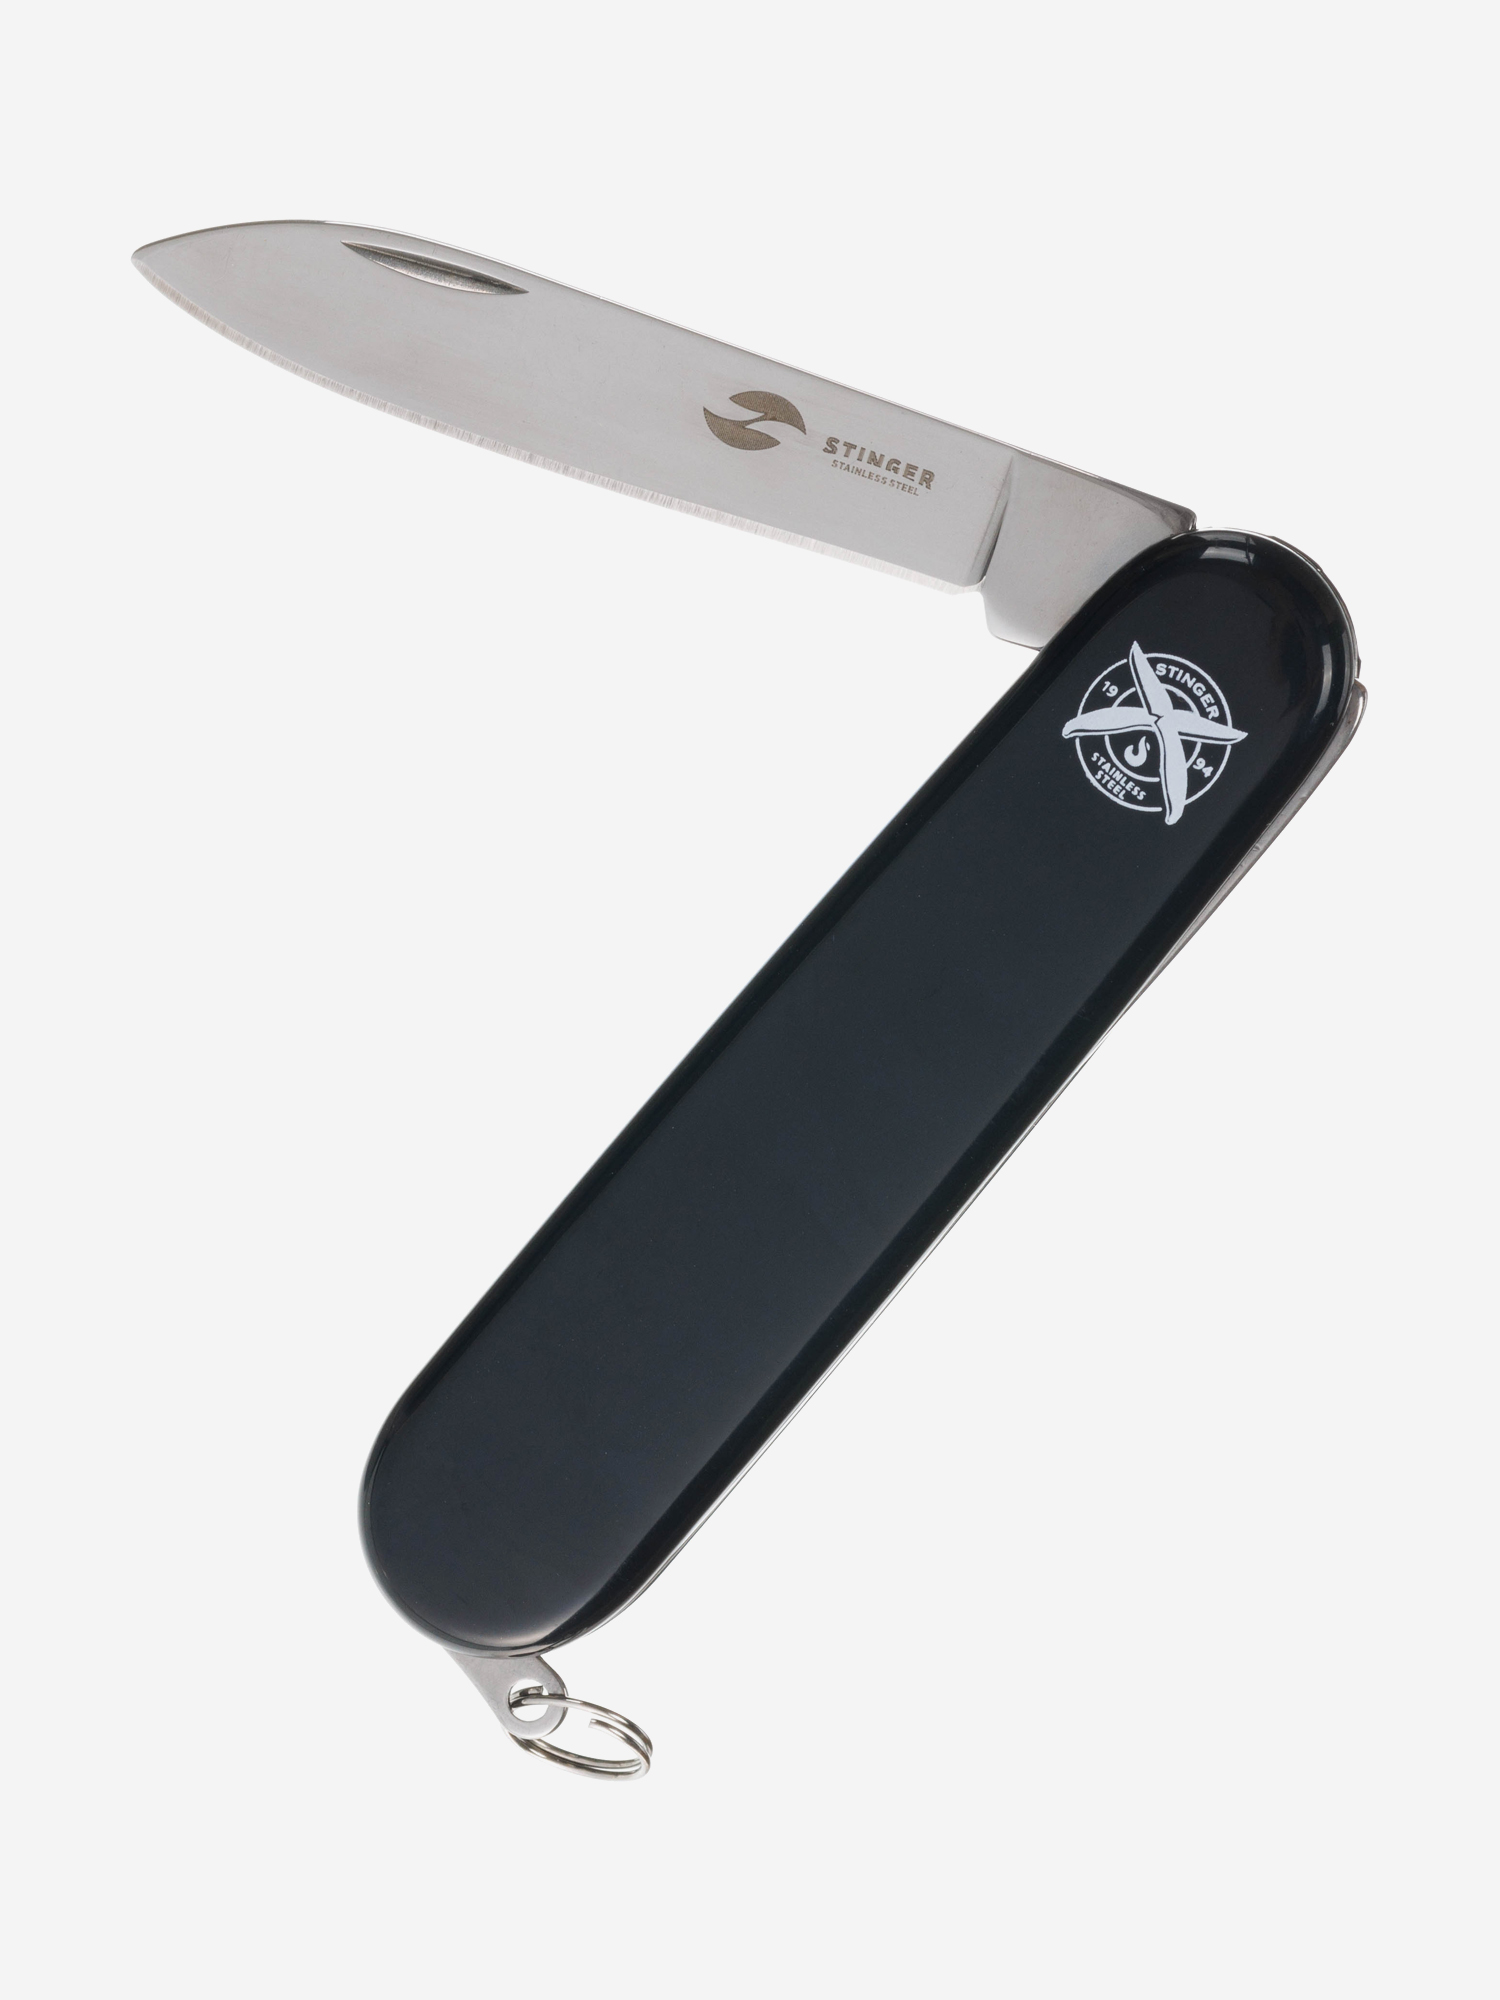 Нож перочинный Stinger, 90 мм, 2 функции, материал рукояти: АБС-пластик (черный), Черный нож stinger 114 3 мм серый подарочная упаковка